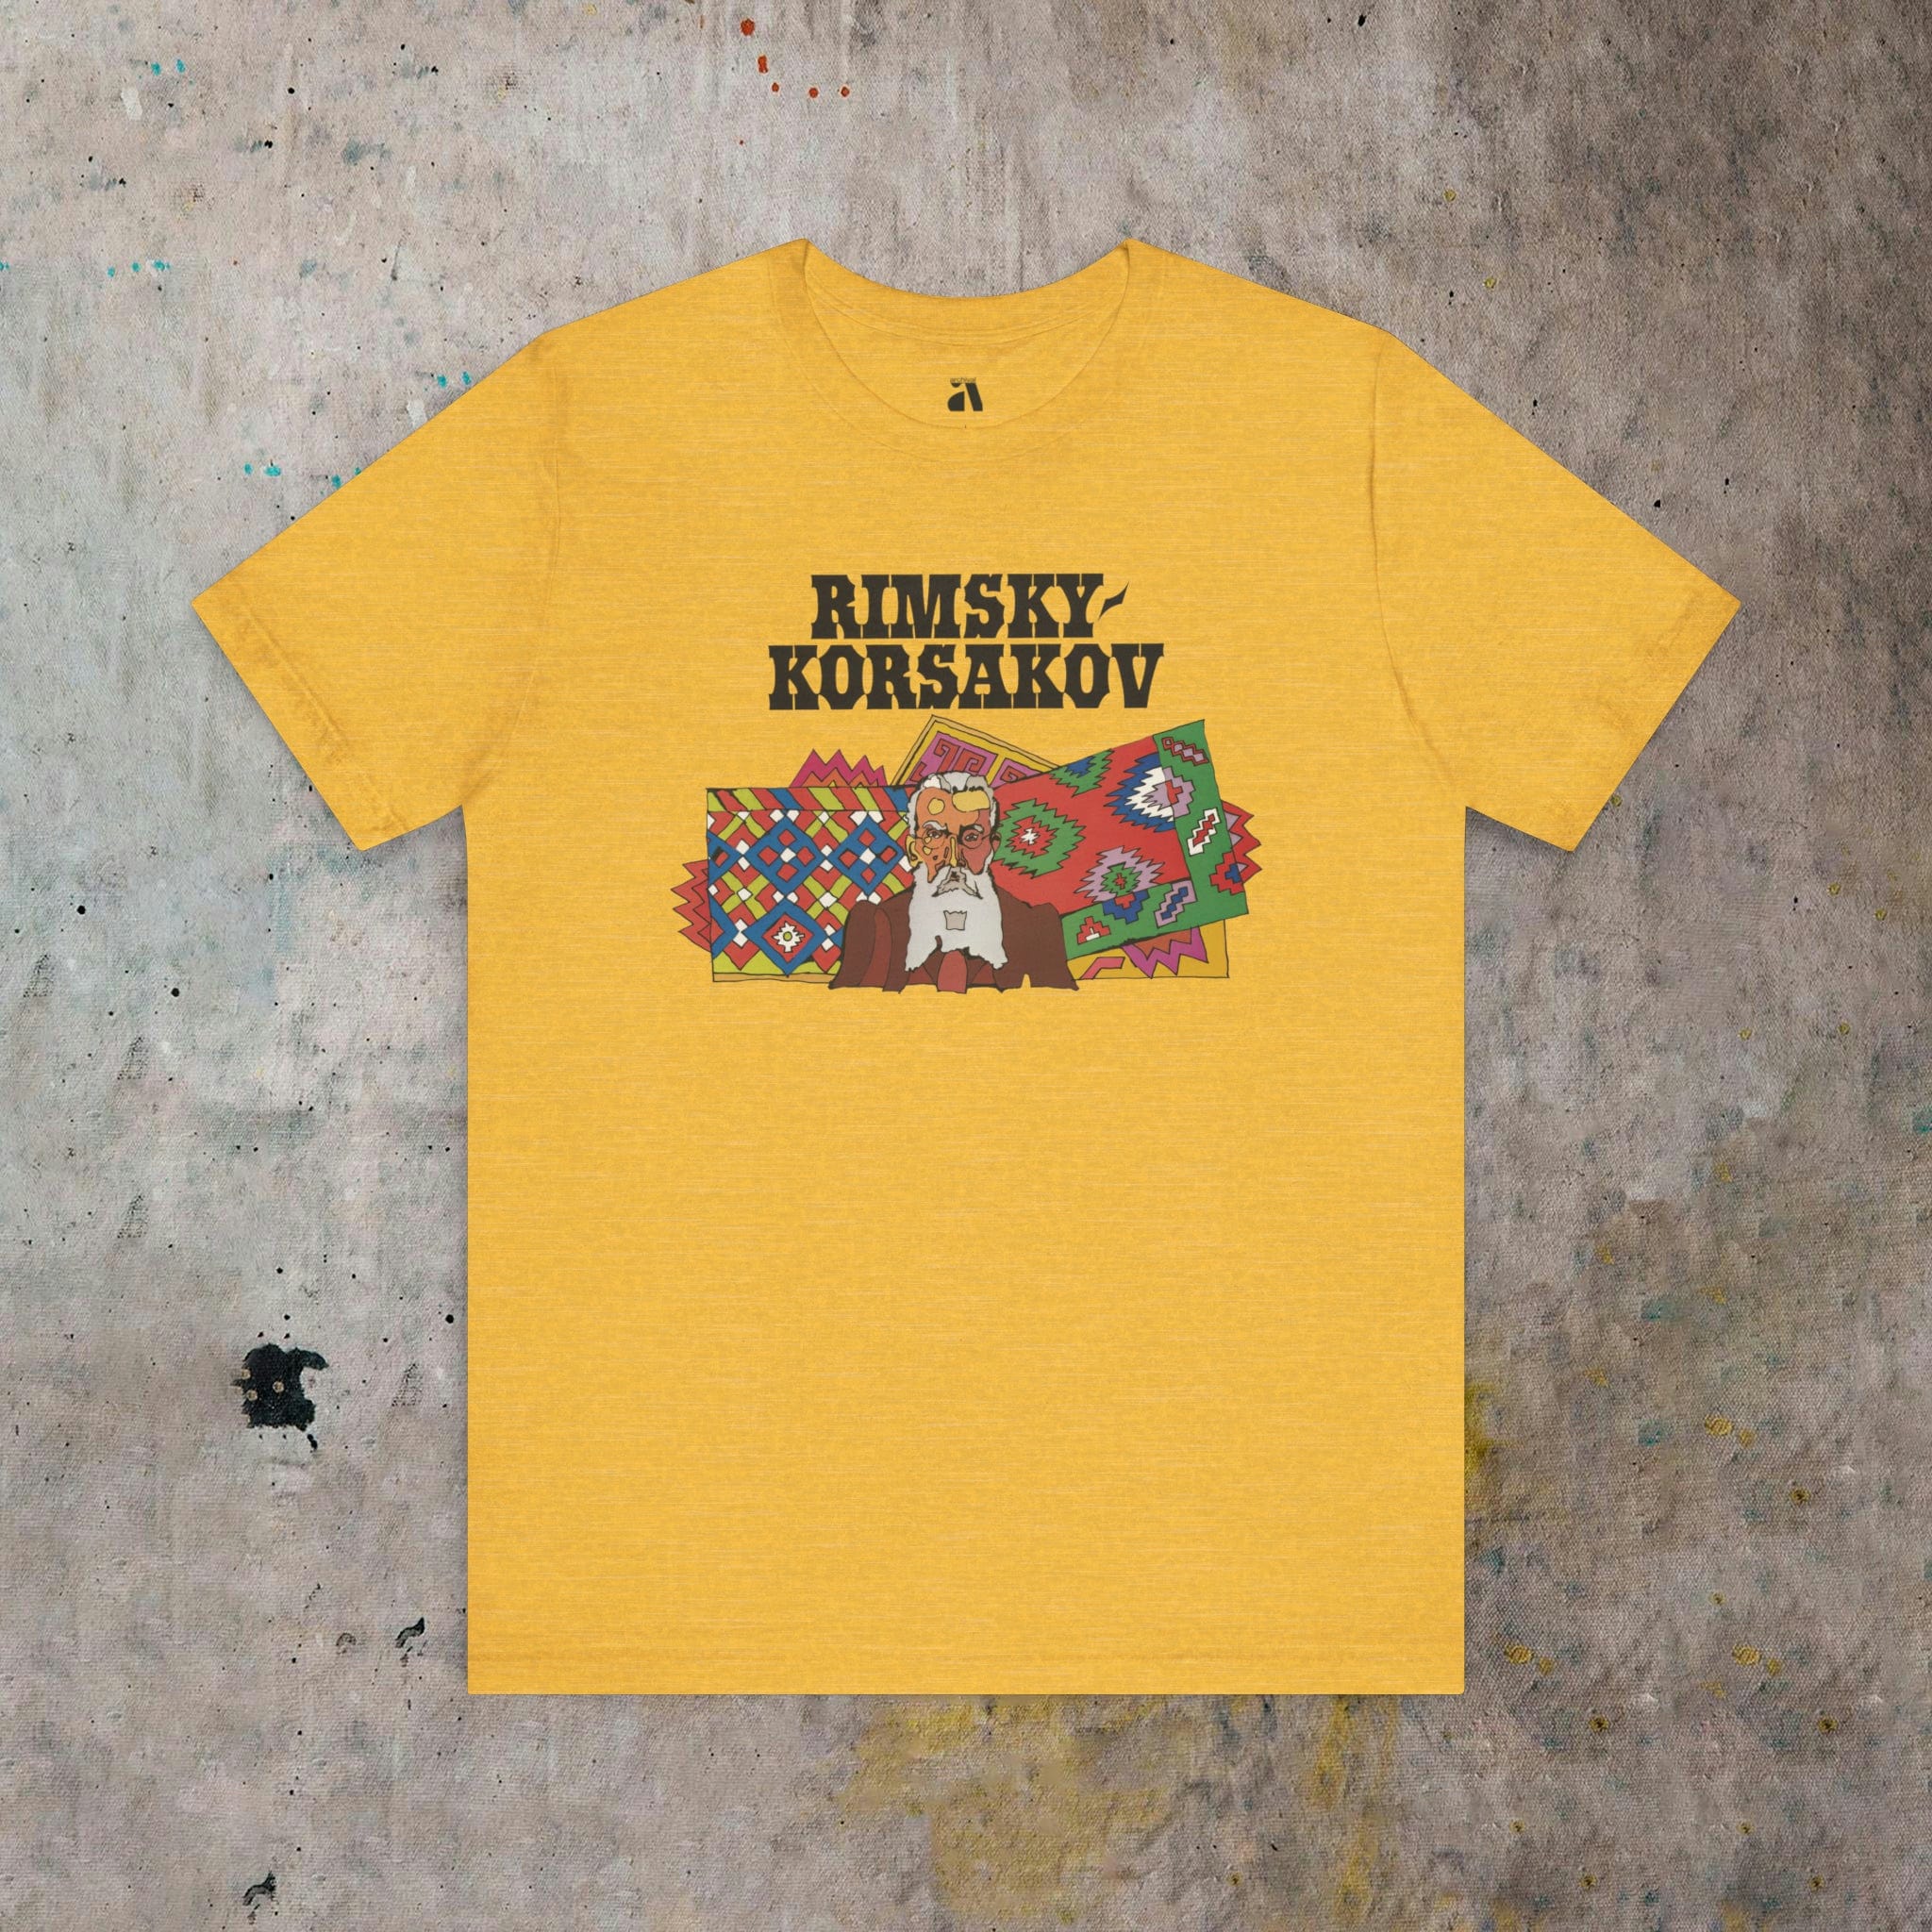 Rimsky-Korsakov: Illustrated T-Shirt